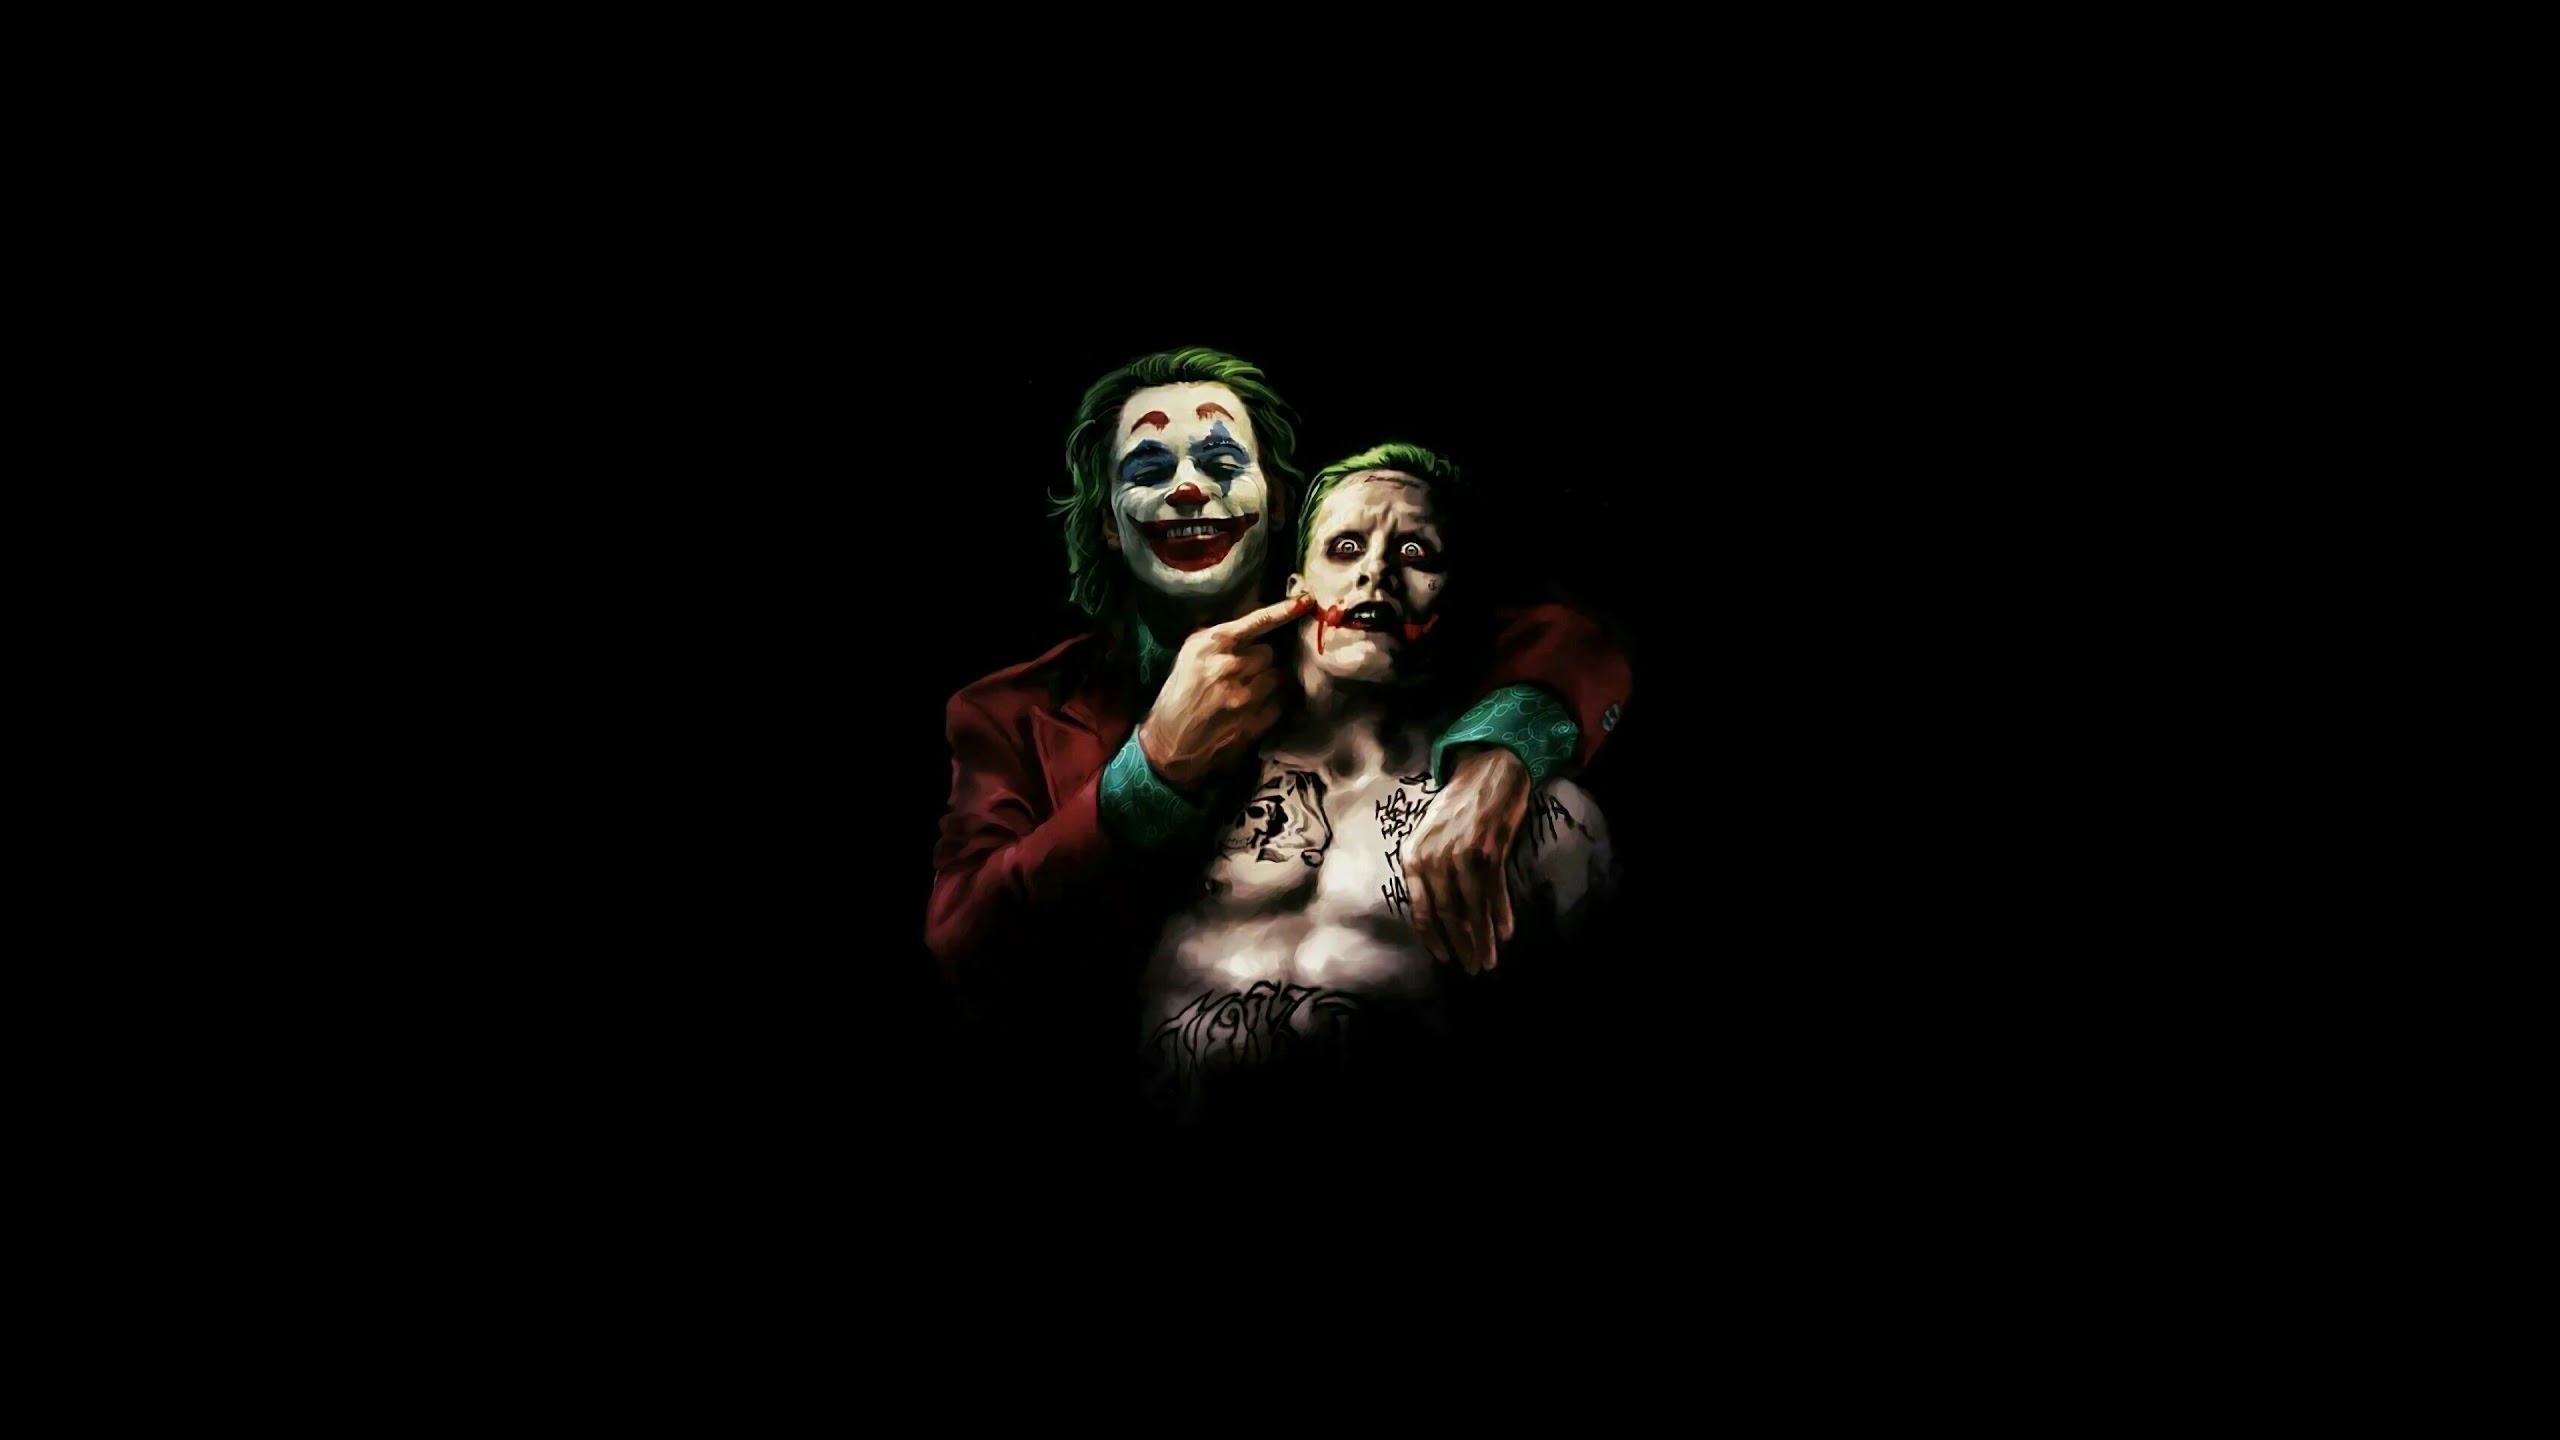 General 2560x1440 Joker Batman Joaquin Phoenix Jared Leto DC Comics villains artwork